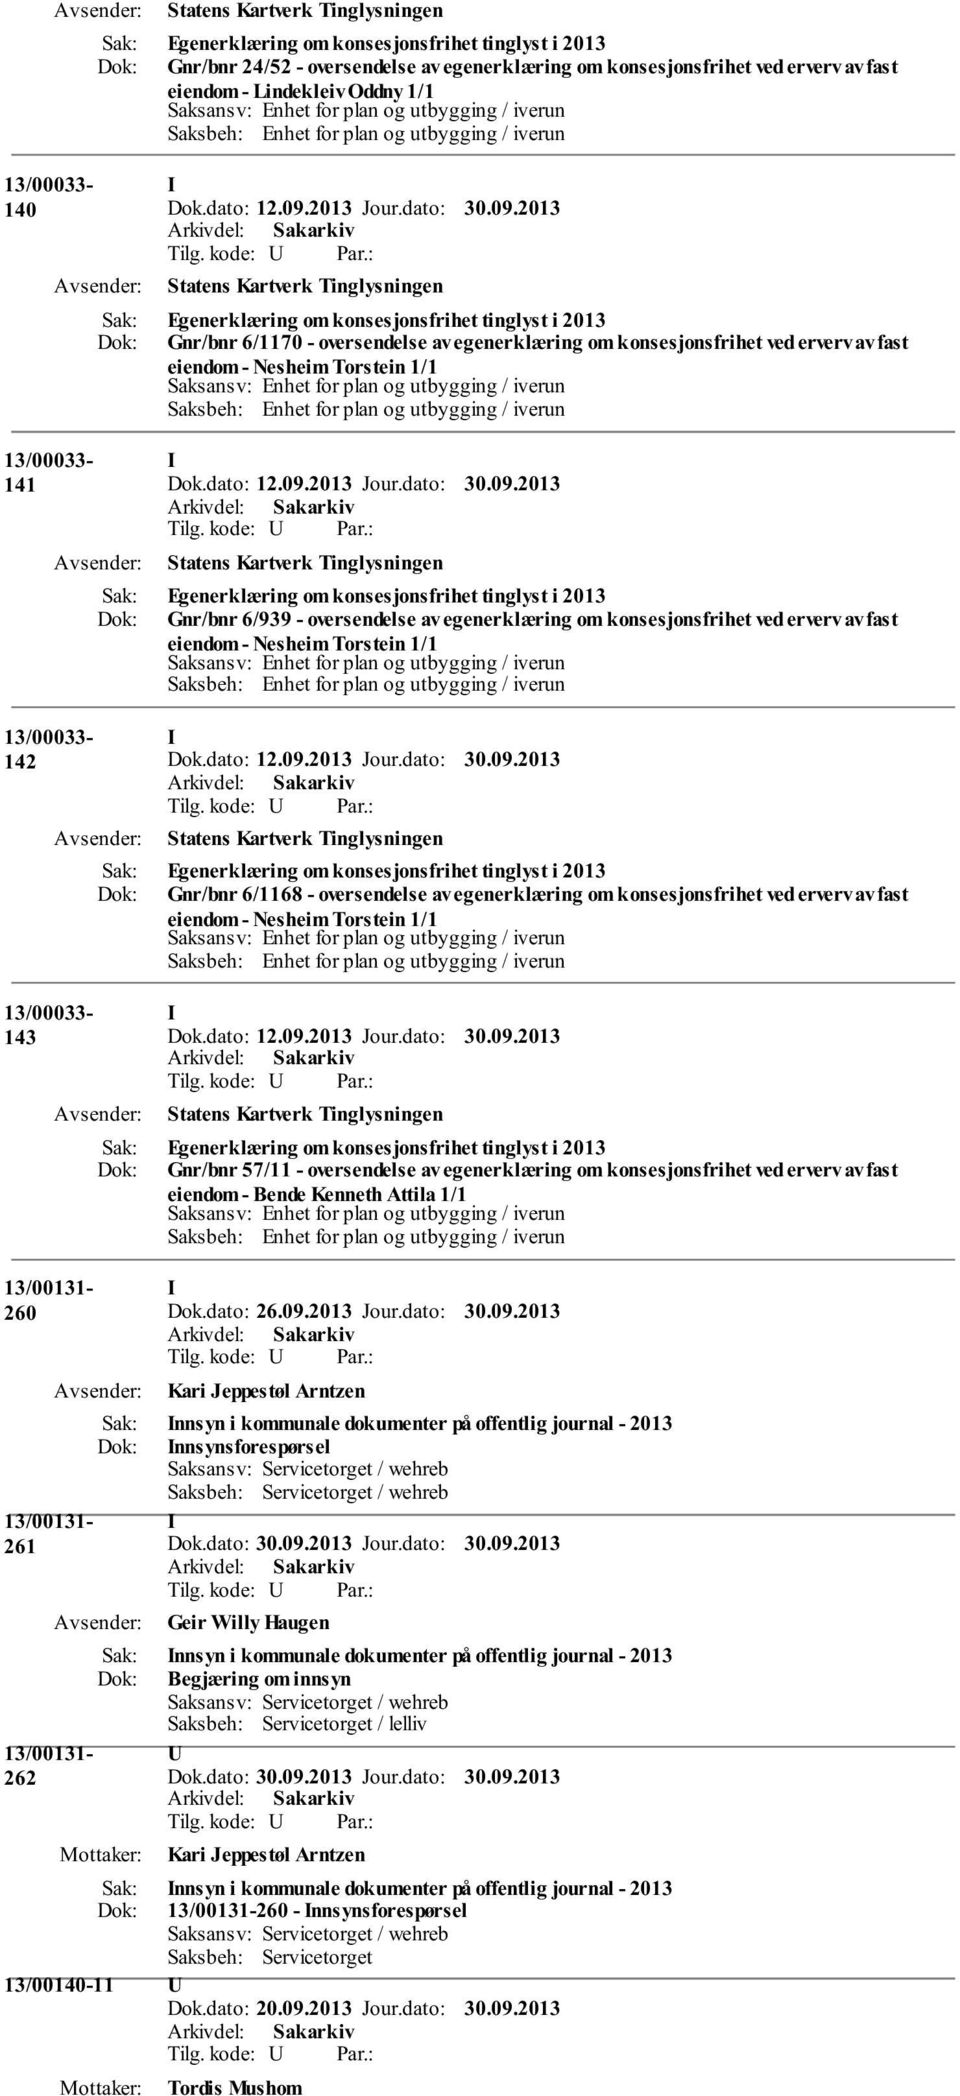 Gnr/bnr 6/939 - oversendelse av egenerklæring om konsesjonsfrihet ved erverv av fast eiendom - Nesheim Torstein 1/1 142 Egenerklæring om konsesjonsfrihet tinglyst i 2013 Gnr/bnr 6/1168 - oversendelse